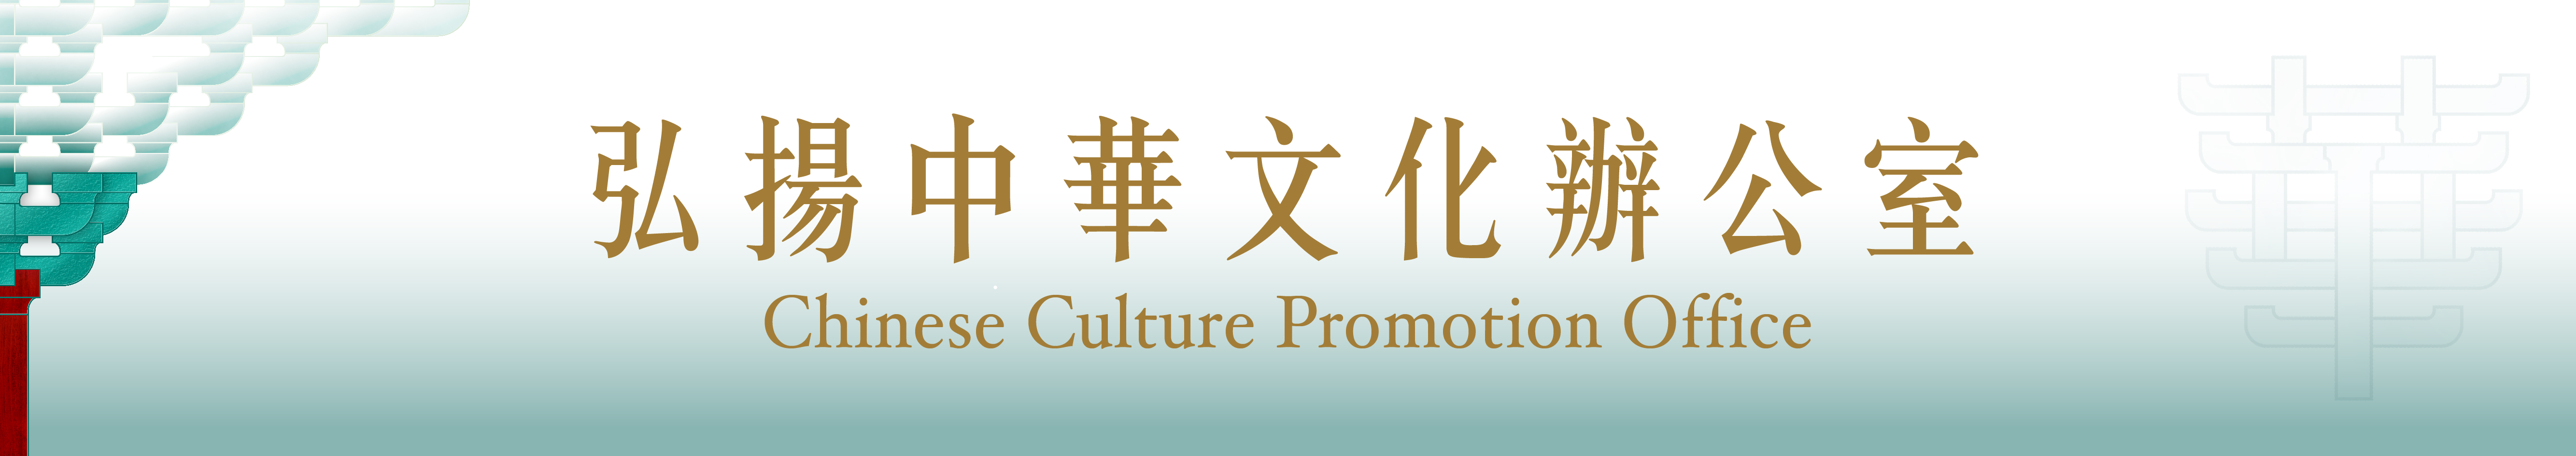 弘揚中華文化系列